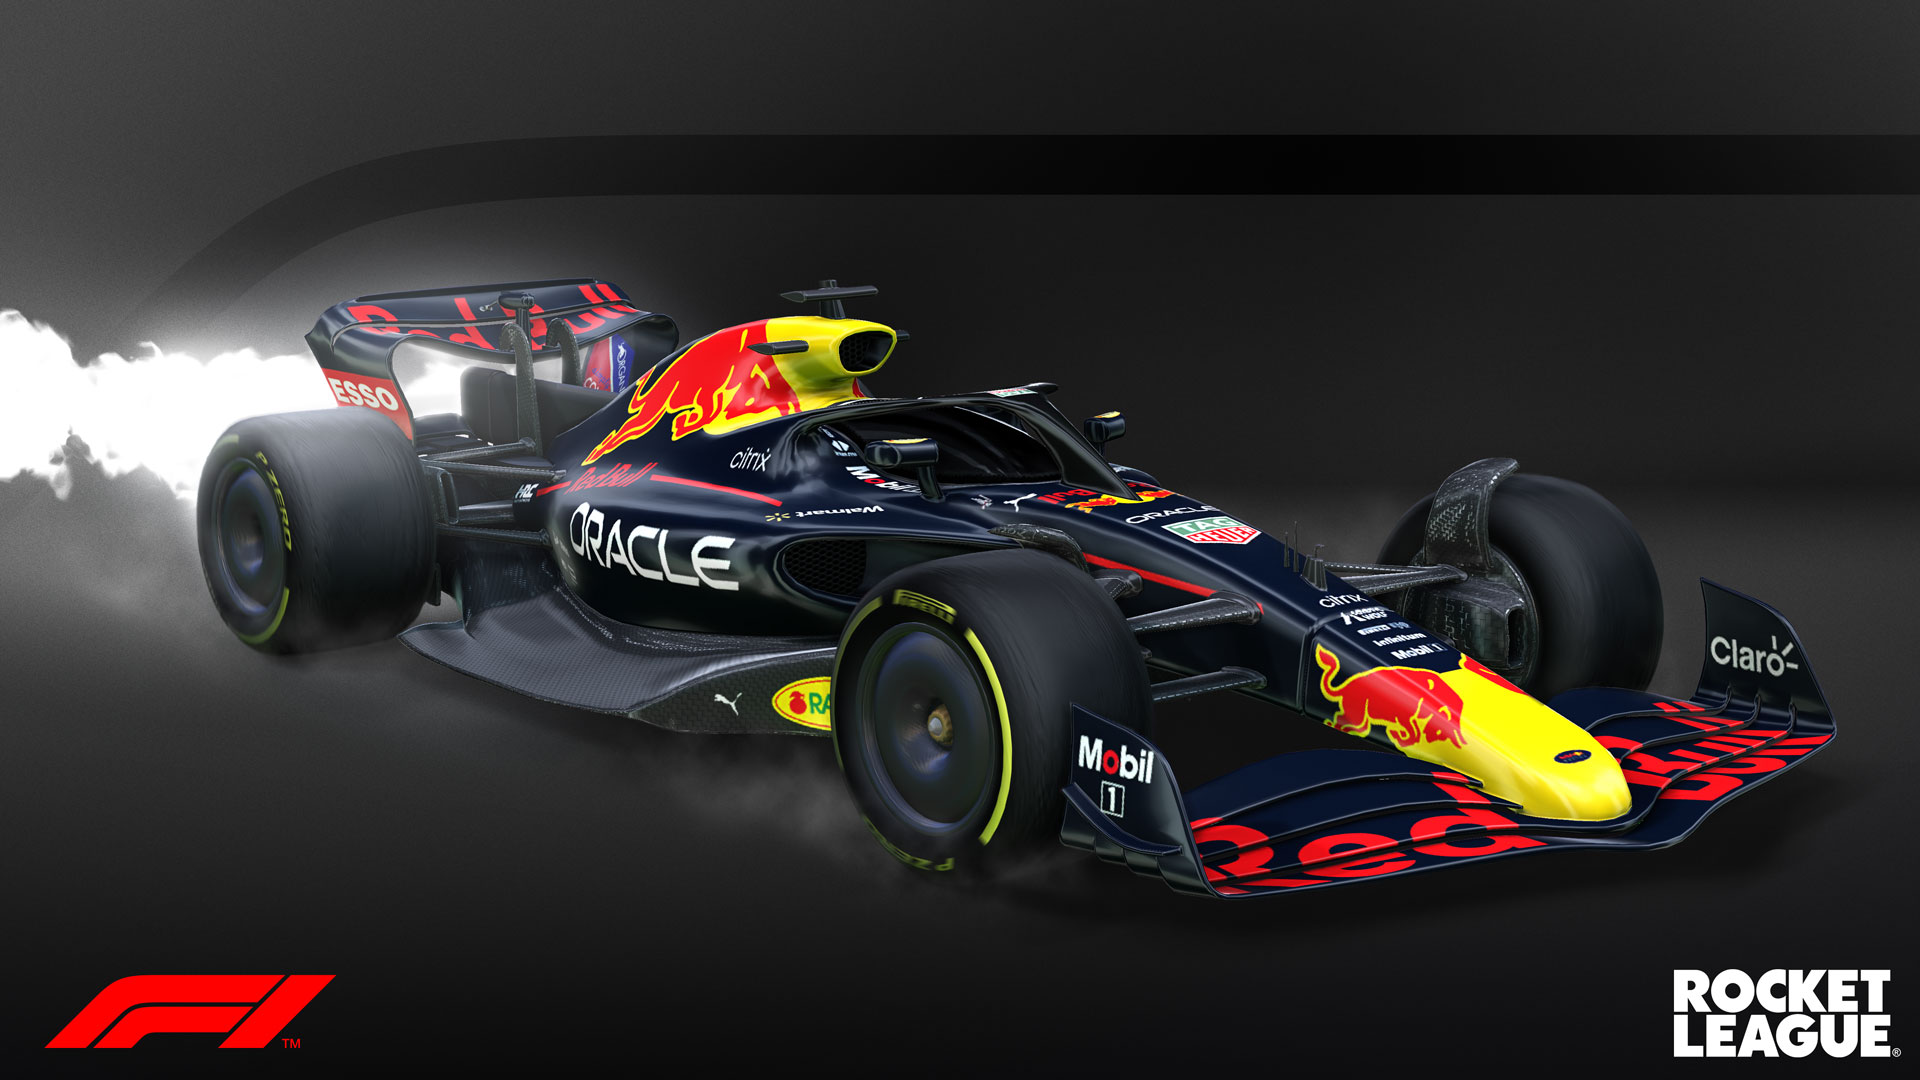 2022 Red Bull F1 Rocket League Car